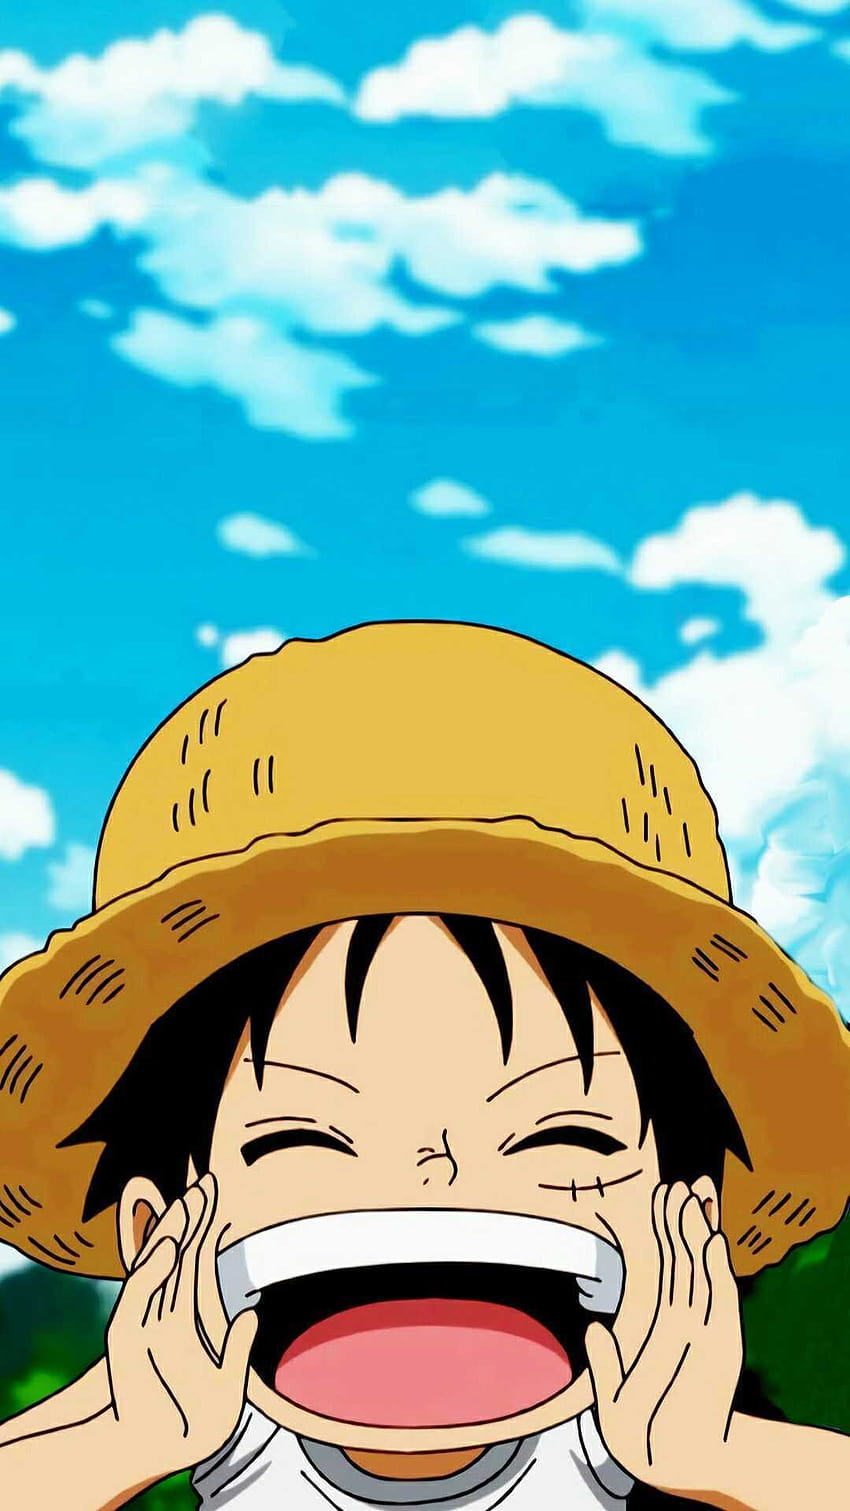 Luffy luôn là một trong những nhân vật quyến rũ nhất trong One Piece. Hãy giữ nguyên sức mạnh phi thường của anh ấy trên màn hình điện thoại của bạn với những hình nền mang phong cách Luffy độc đáo. Với các hình nền điện thoại One Piece chất lượng cao, bạn sẽ luôn được cập nhật với những hình ảnh đẹp nhất và sẵn sàng để thể hiện tình yêu của mình với băng hải tặc Mũ Rơm.